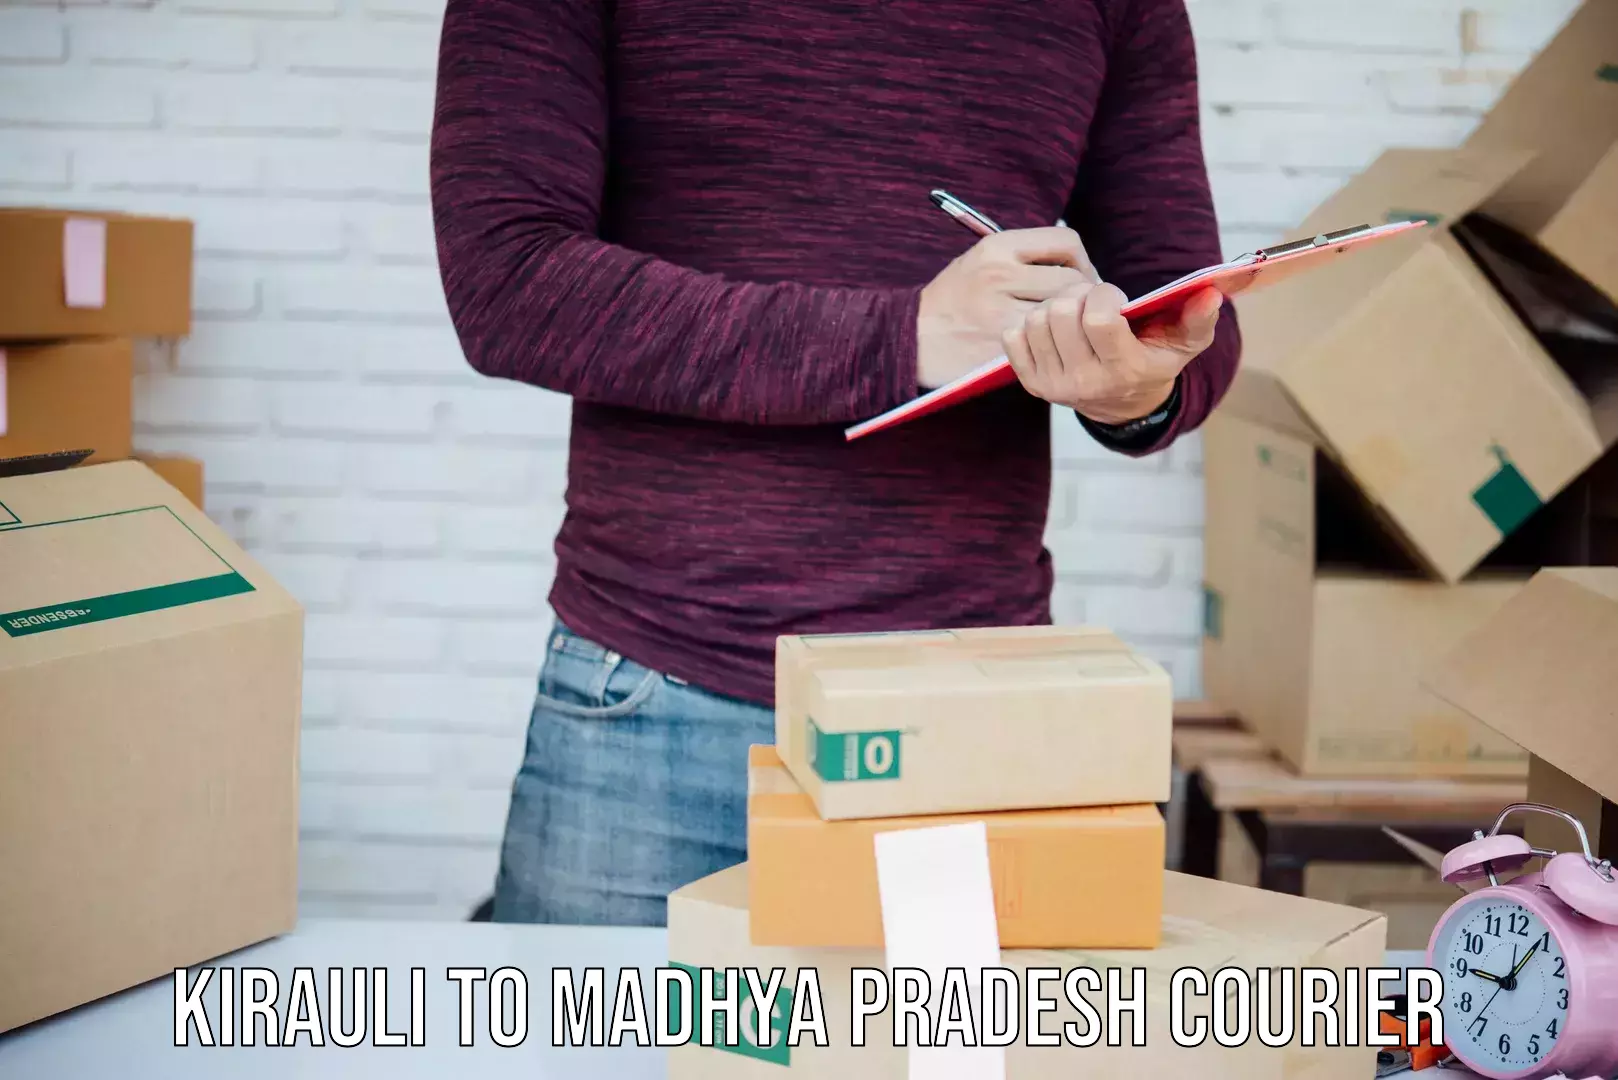 Bulk courier orders in Kirauli to Madhya Pradesh